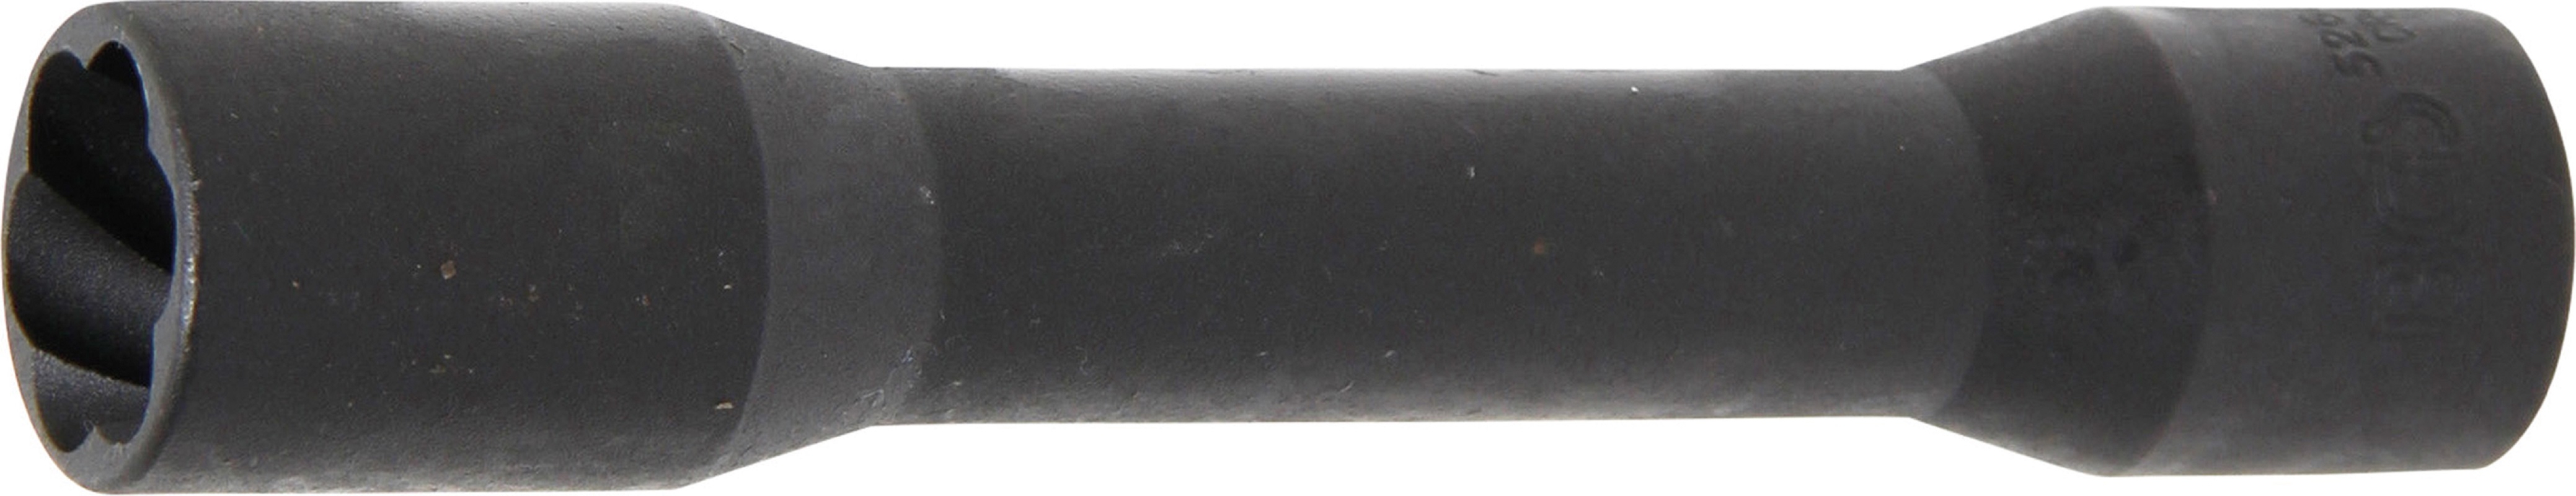 Spezial-Steckschlüssel-Einsatz / Schraubenausdreher, tief | Antrieb Innenvierkant 12,5 mm (1/2") | SW 19 mm - BGS 5264-19